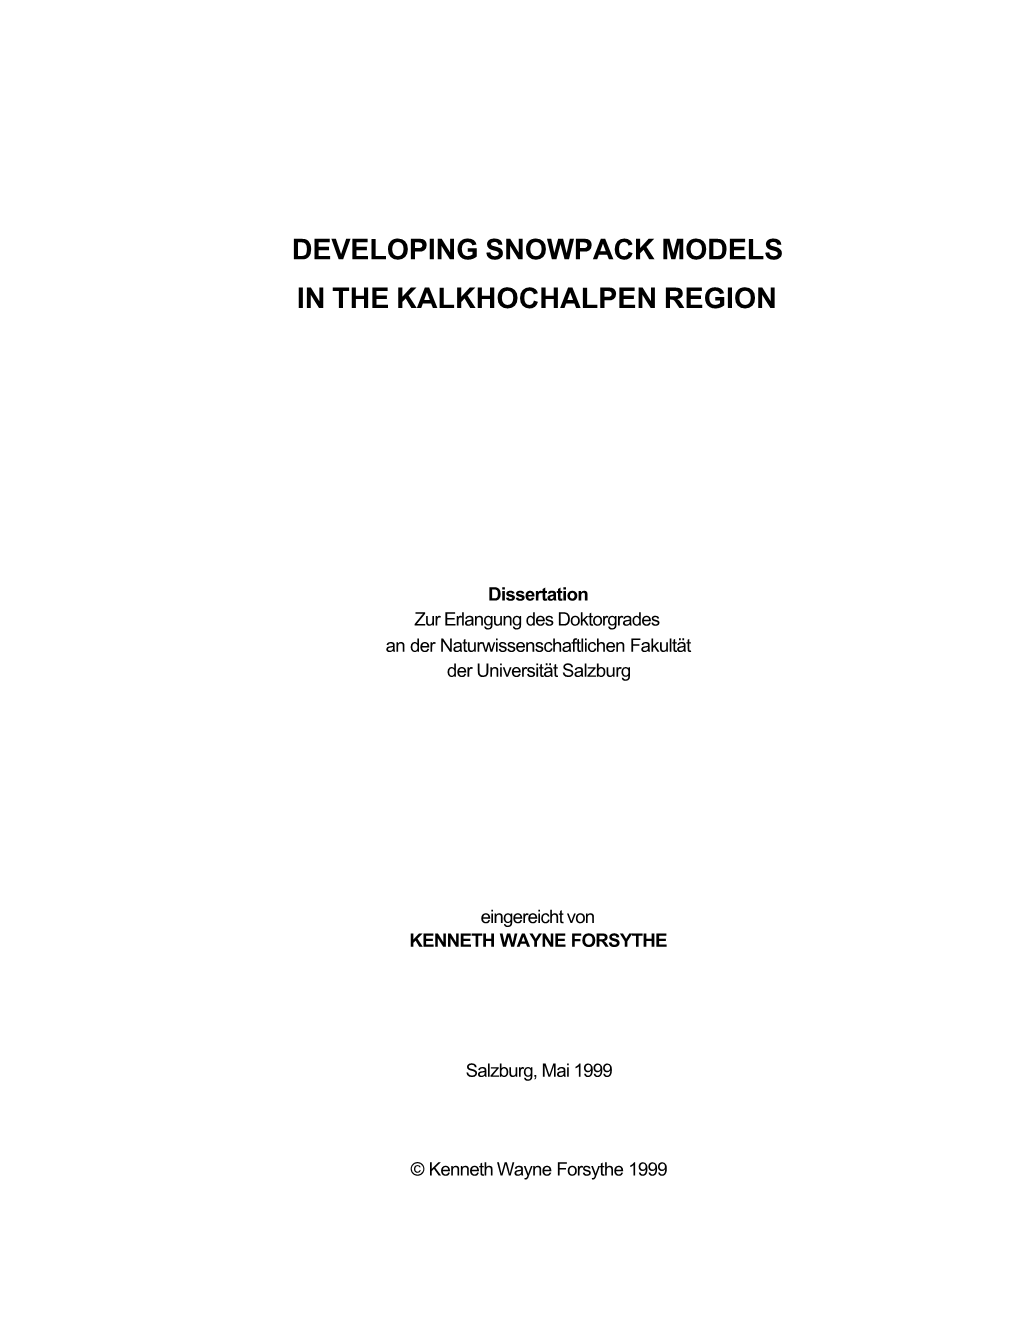 Developing Snowpack Models in the Kalkhochalpen Region